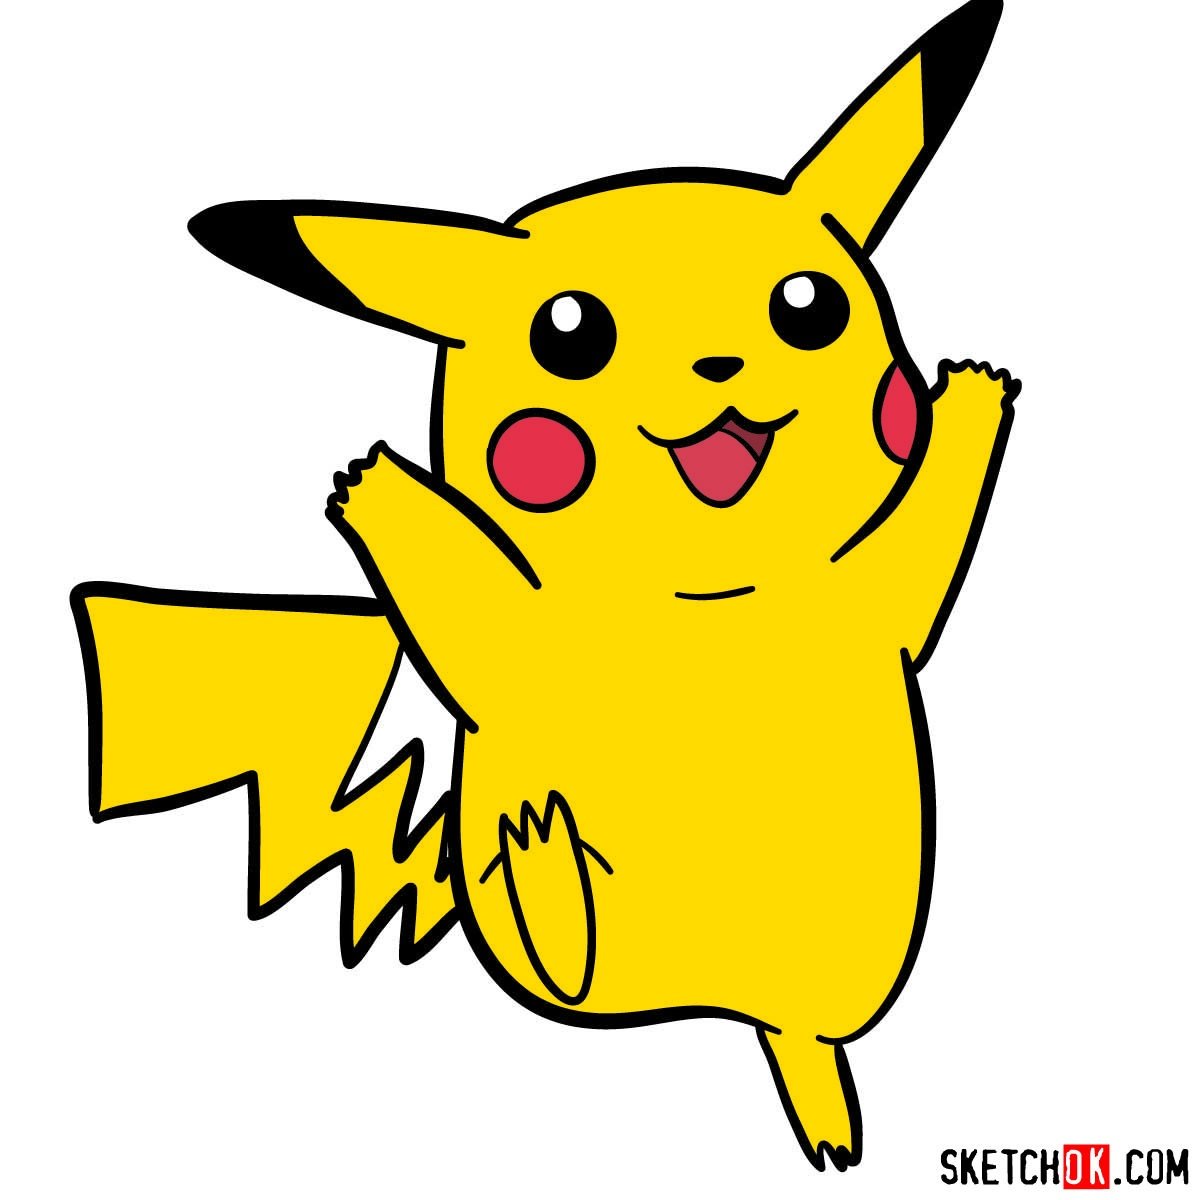 How to draw pikachu from pokemon I Easy to draw I draw anime : r/pokemon-saigonsouth.com.vn